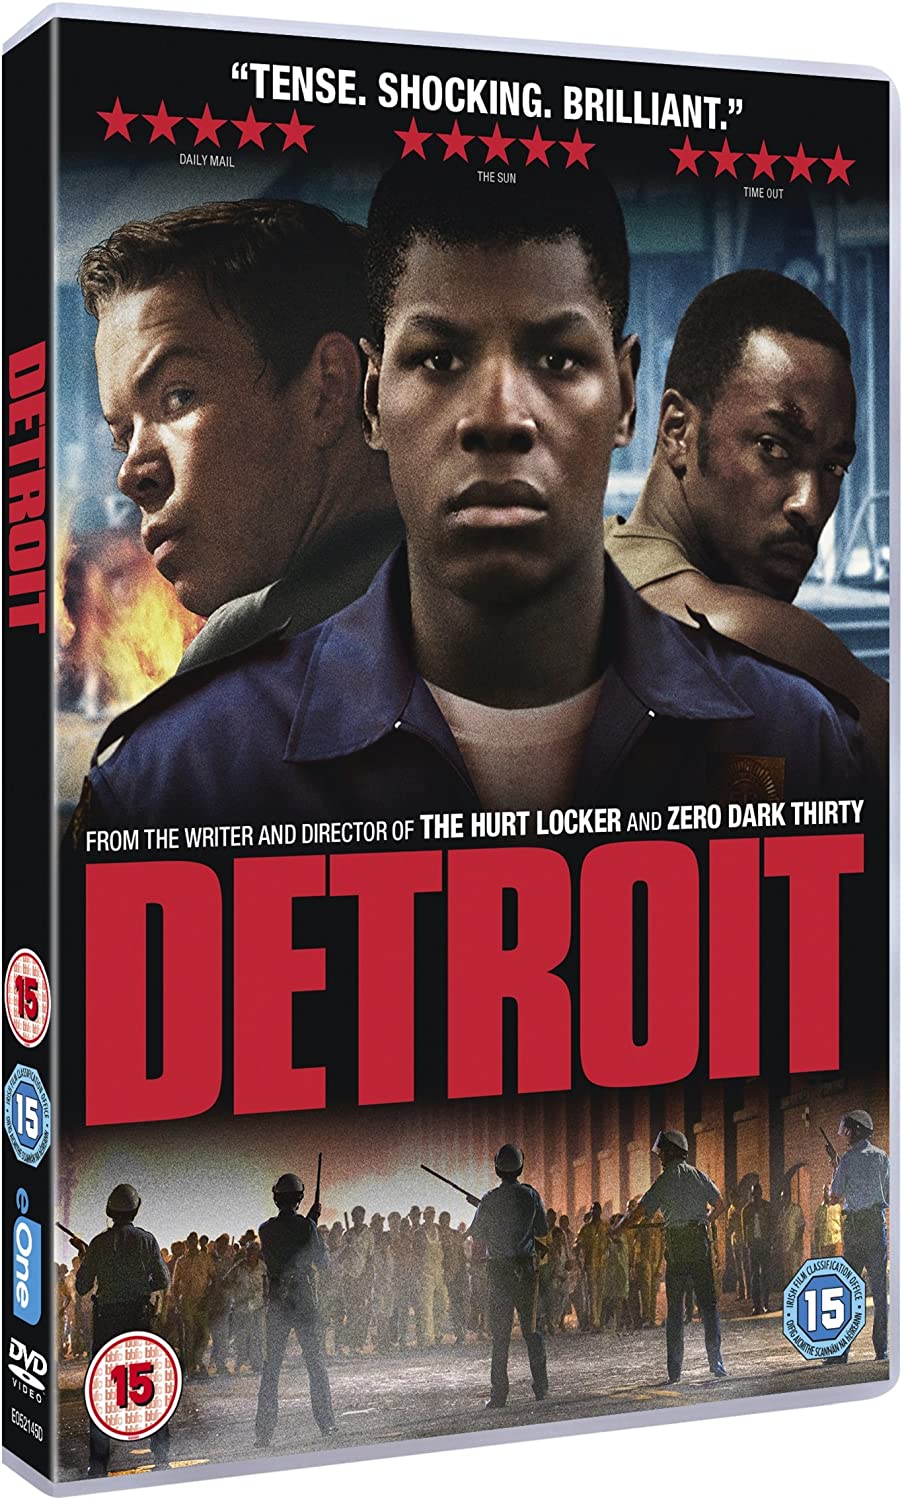 Detroit [DVD] [2017]